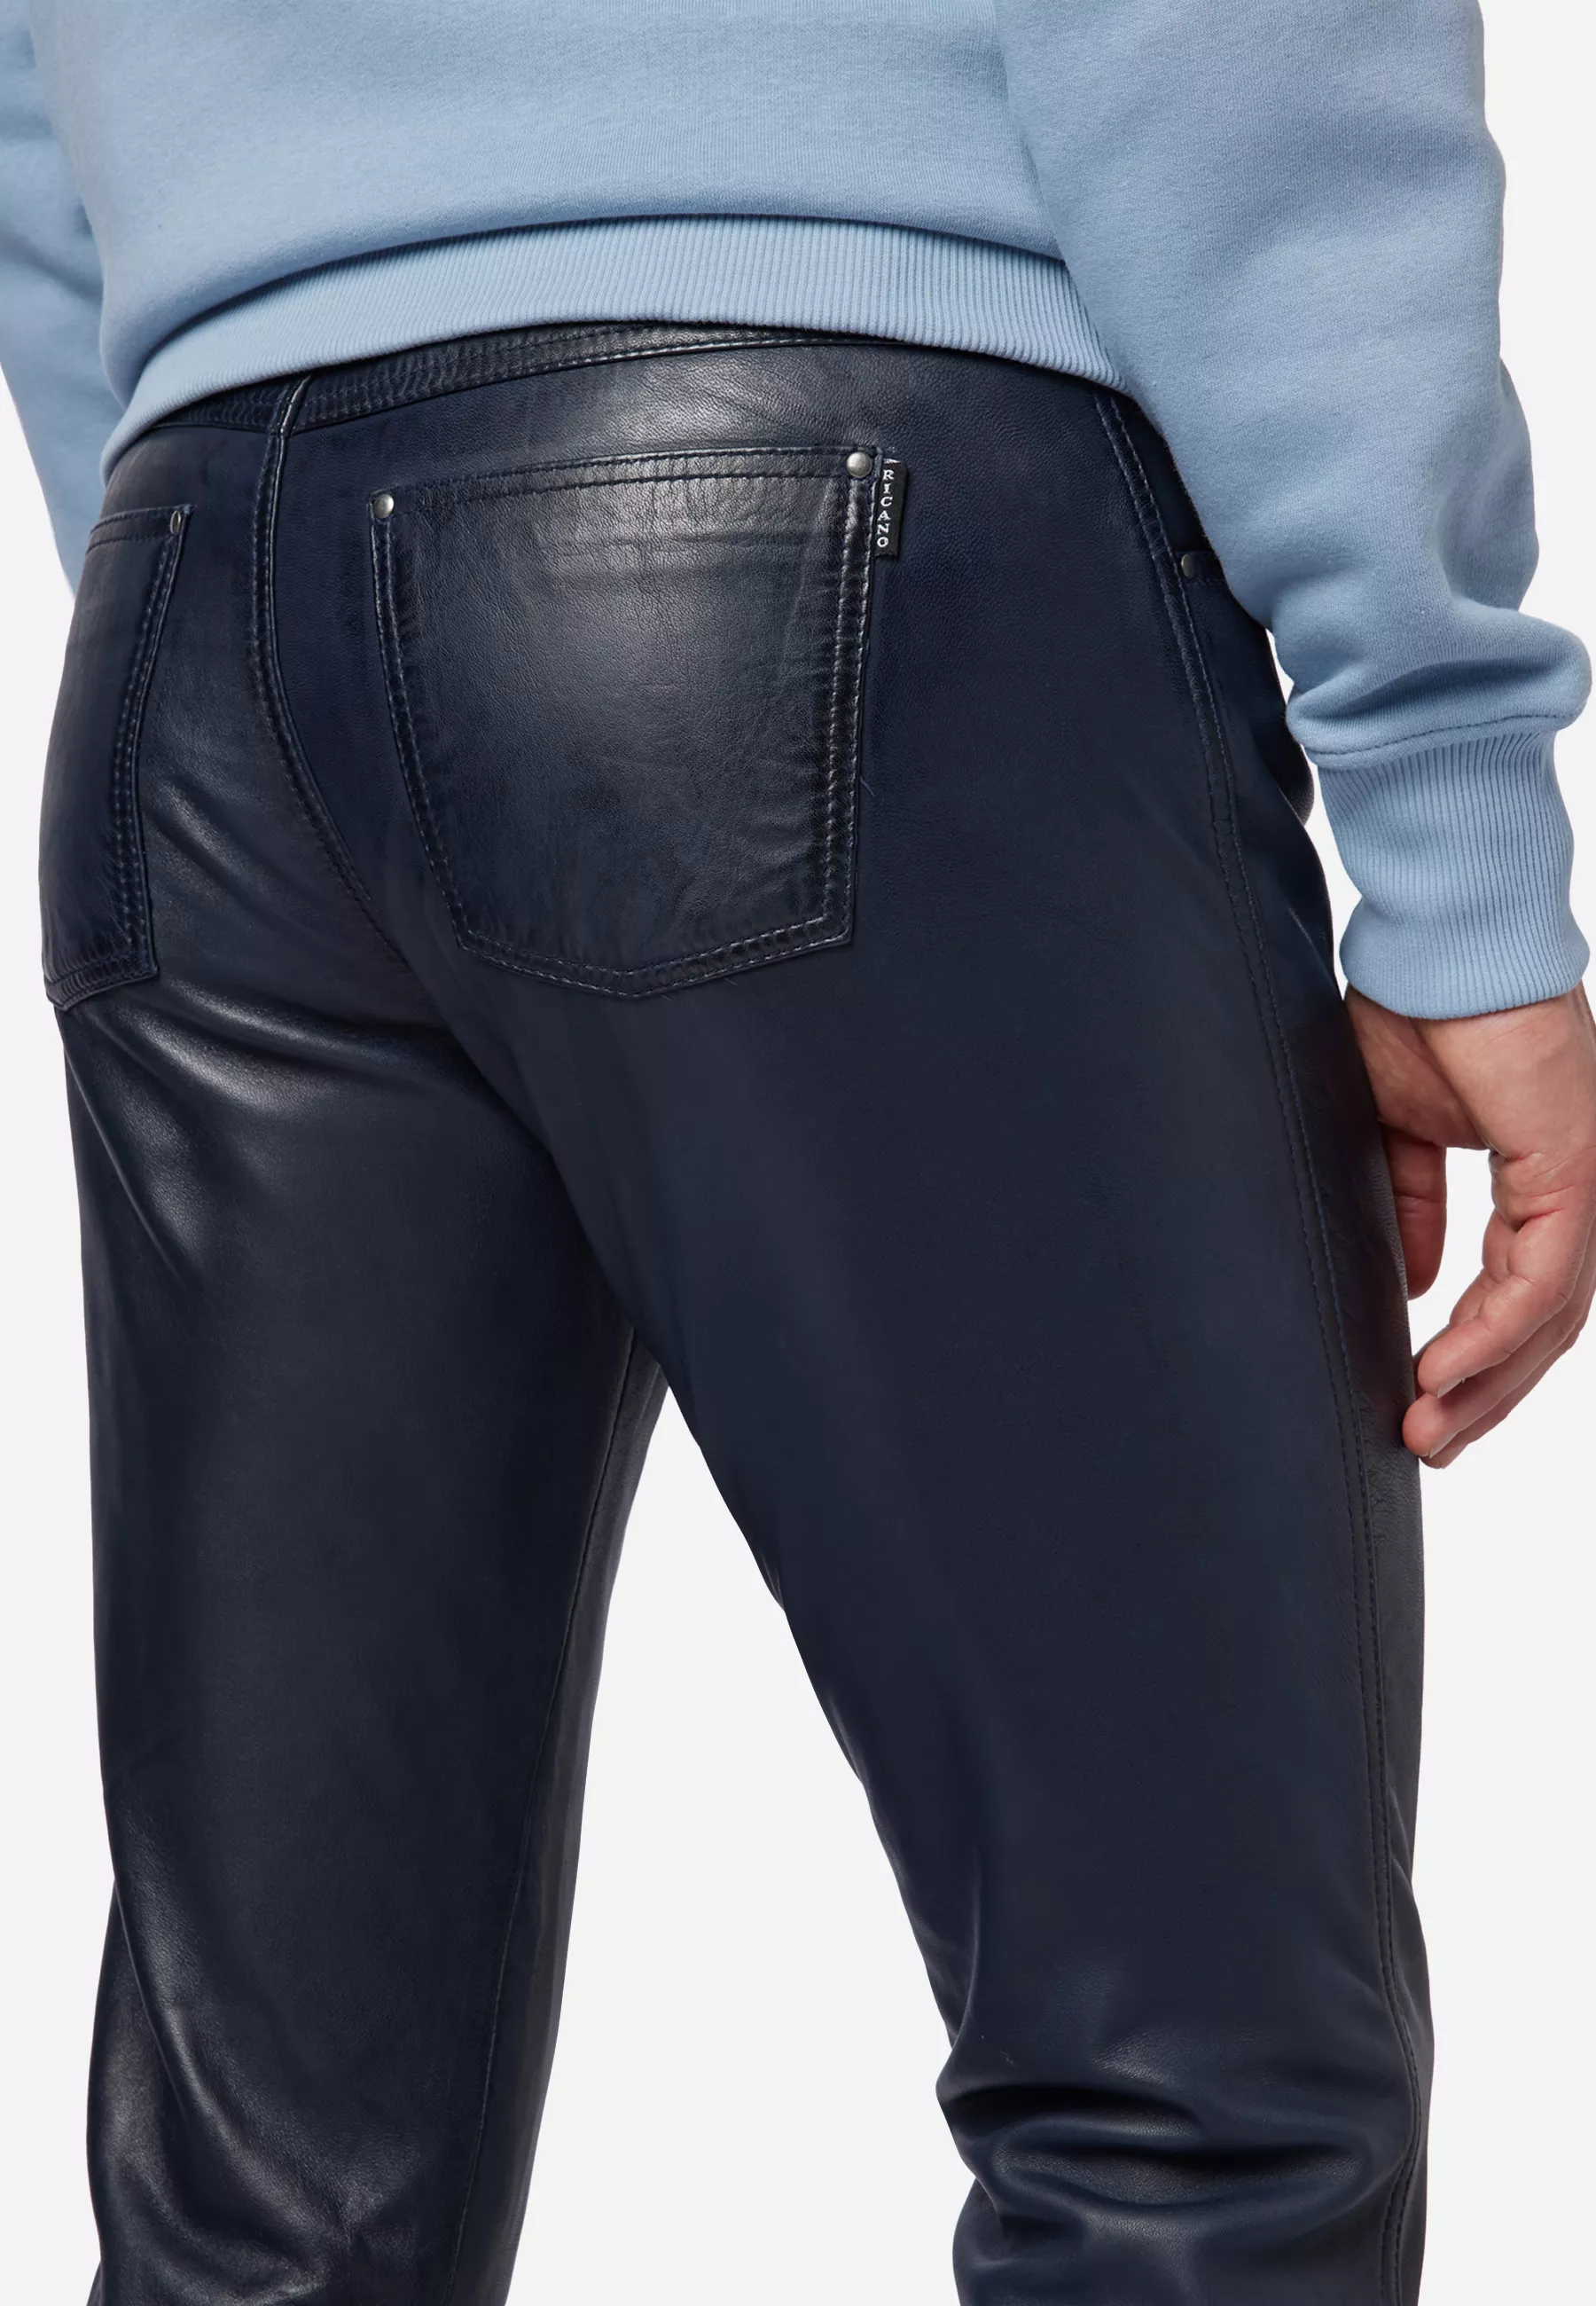 Herren Lederhose Slim Fit in Blau von Ricano, Detailansicht vom Five Pocket Look am Model